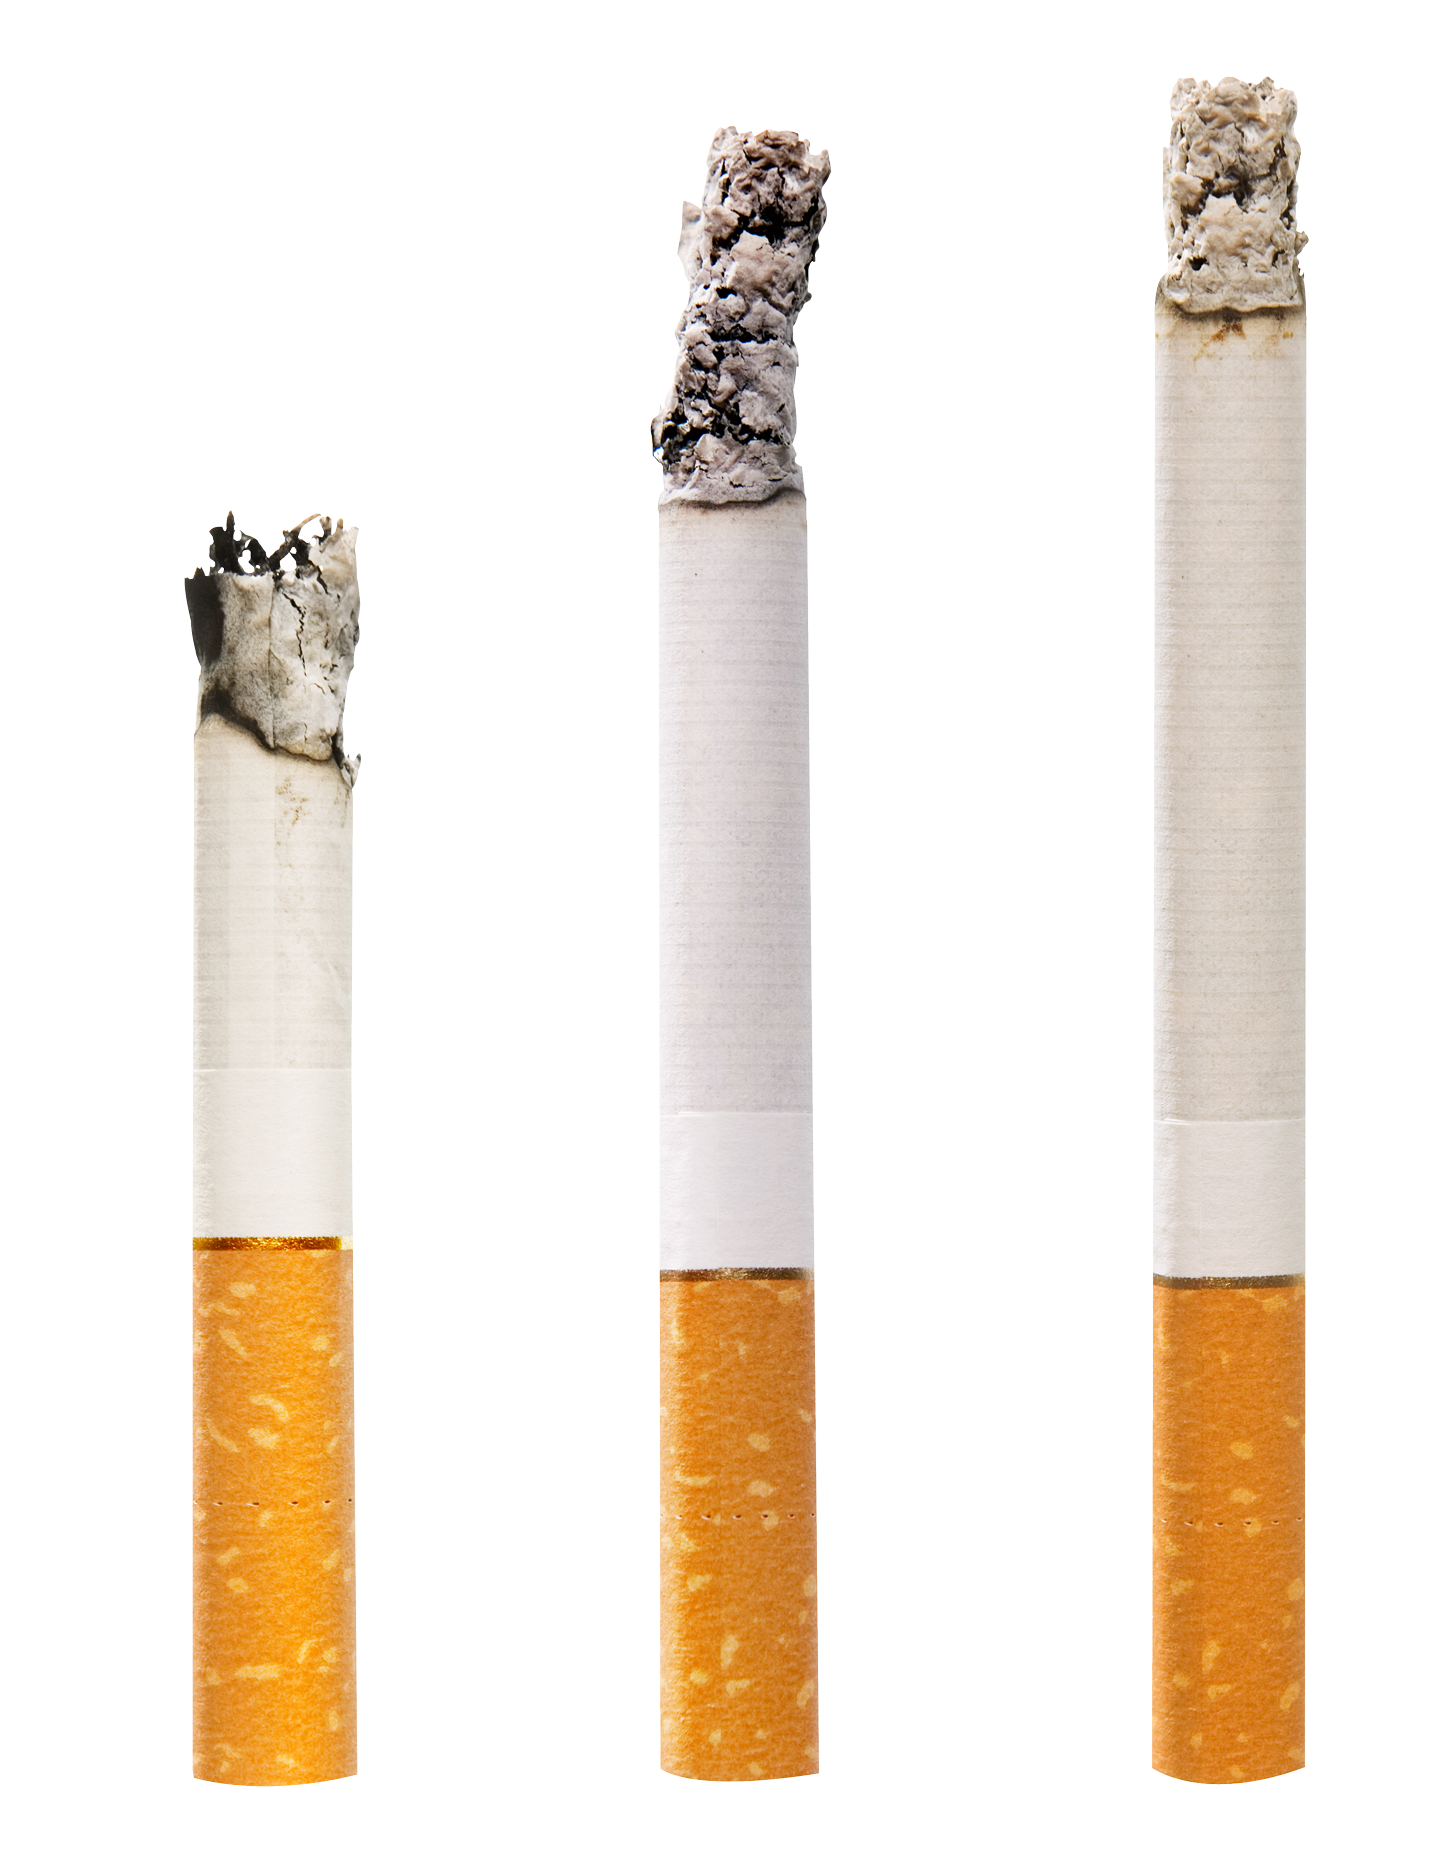 Cigarette, Tobacco, Vices, Ad